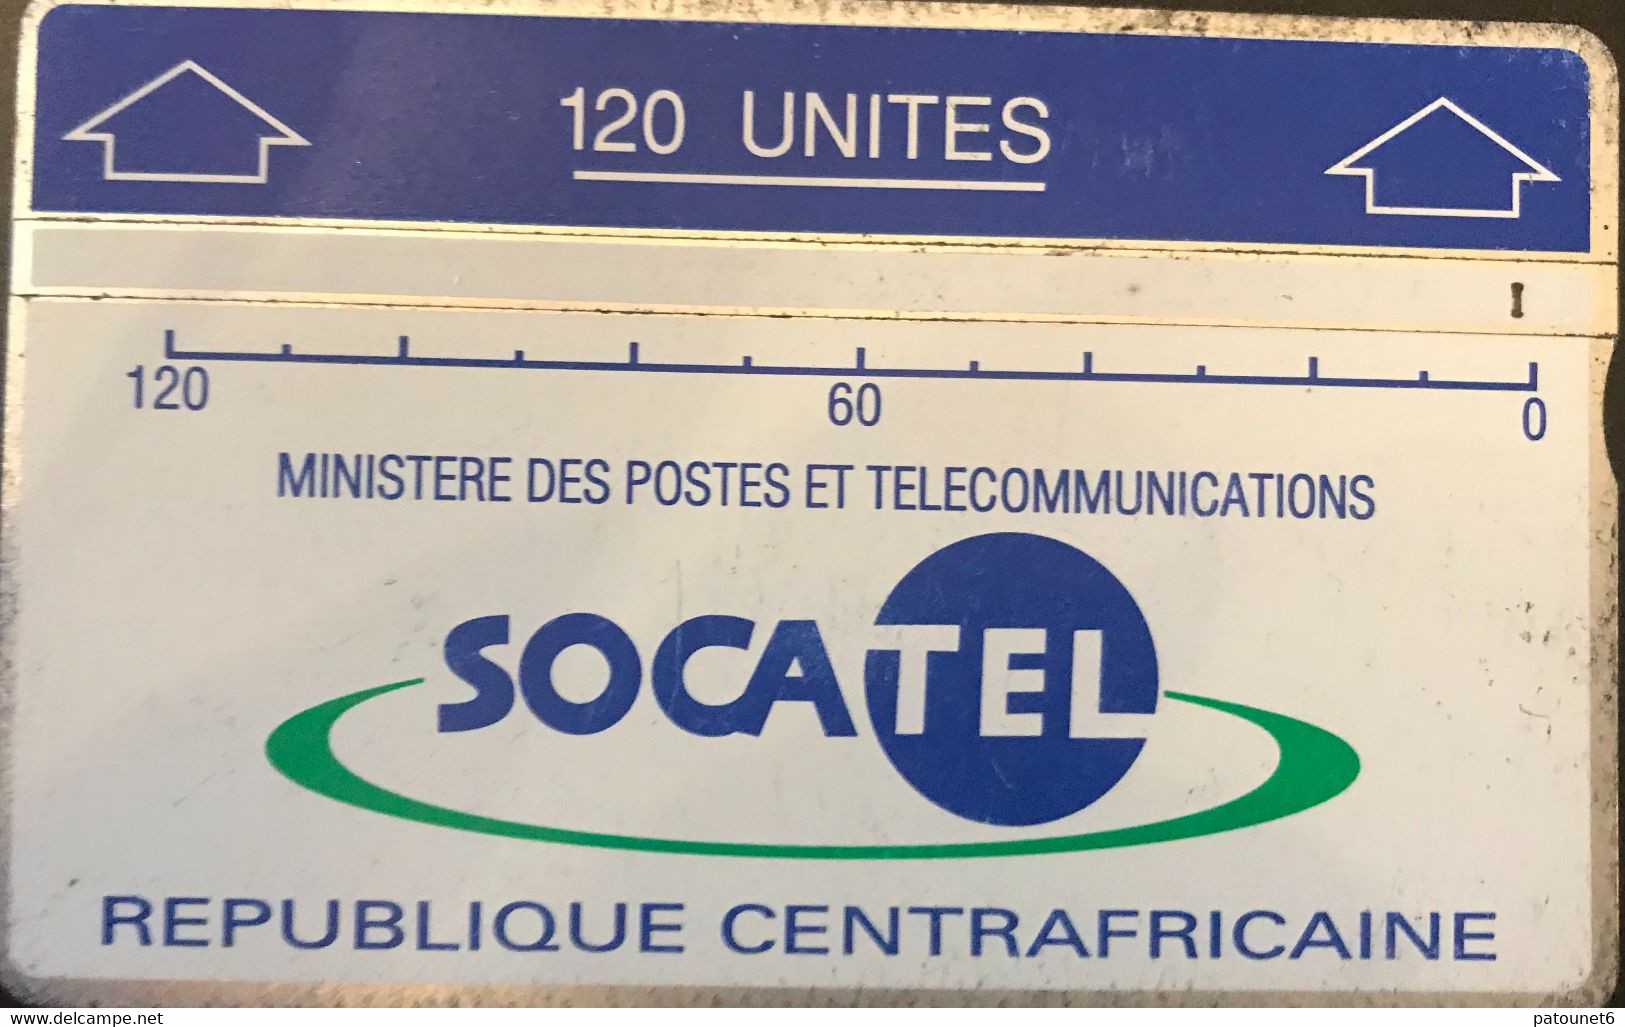 REPUBLIQUE CENTRAFRICAINE  -  L&G  -  SOCATEL  -  120 Unités (bleu) - Centraal-Afrikaanse Republiek